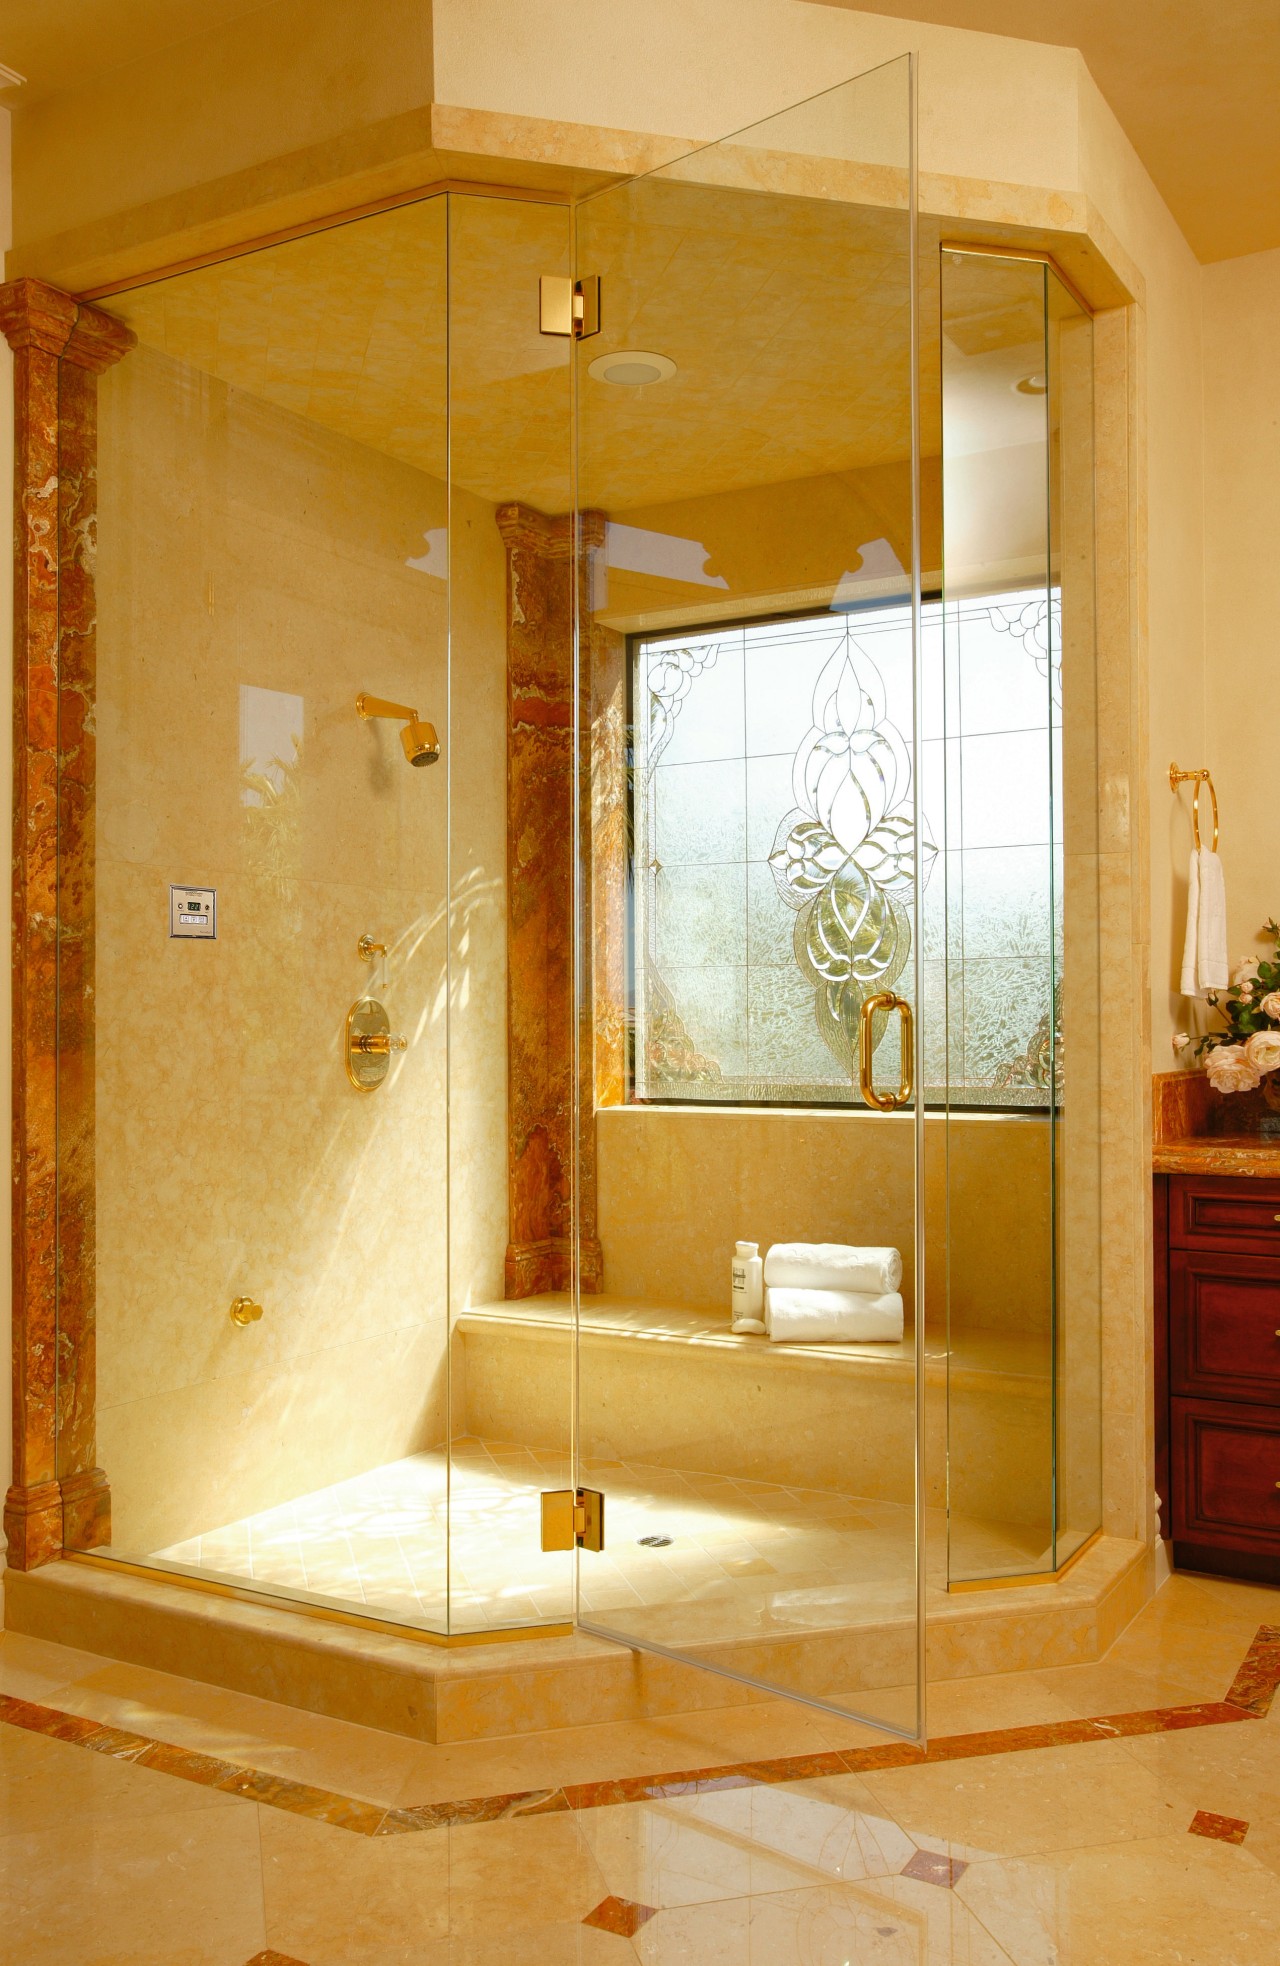 View of the shower unit bathroom, floor, glass, home, interior design, plumbing fixture, room, wall, orange